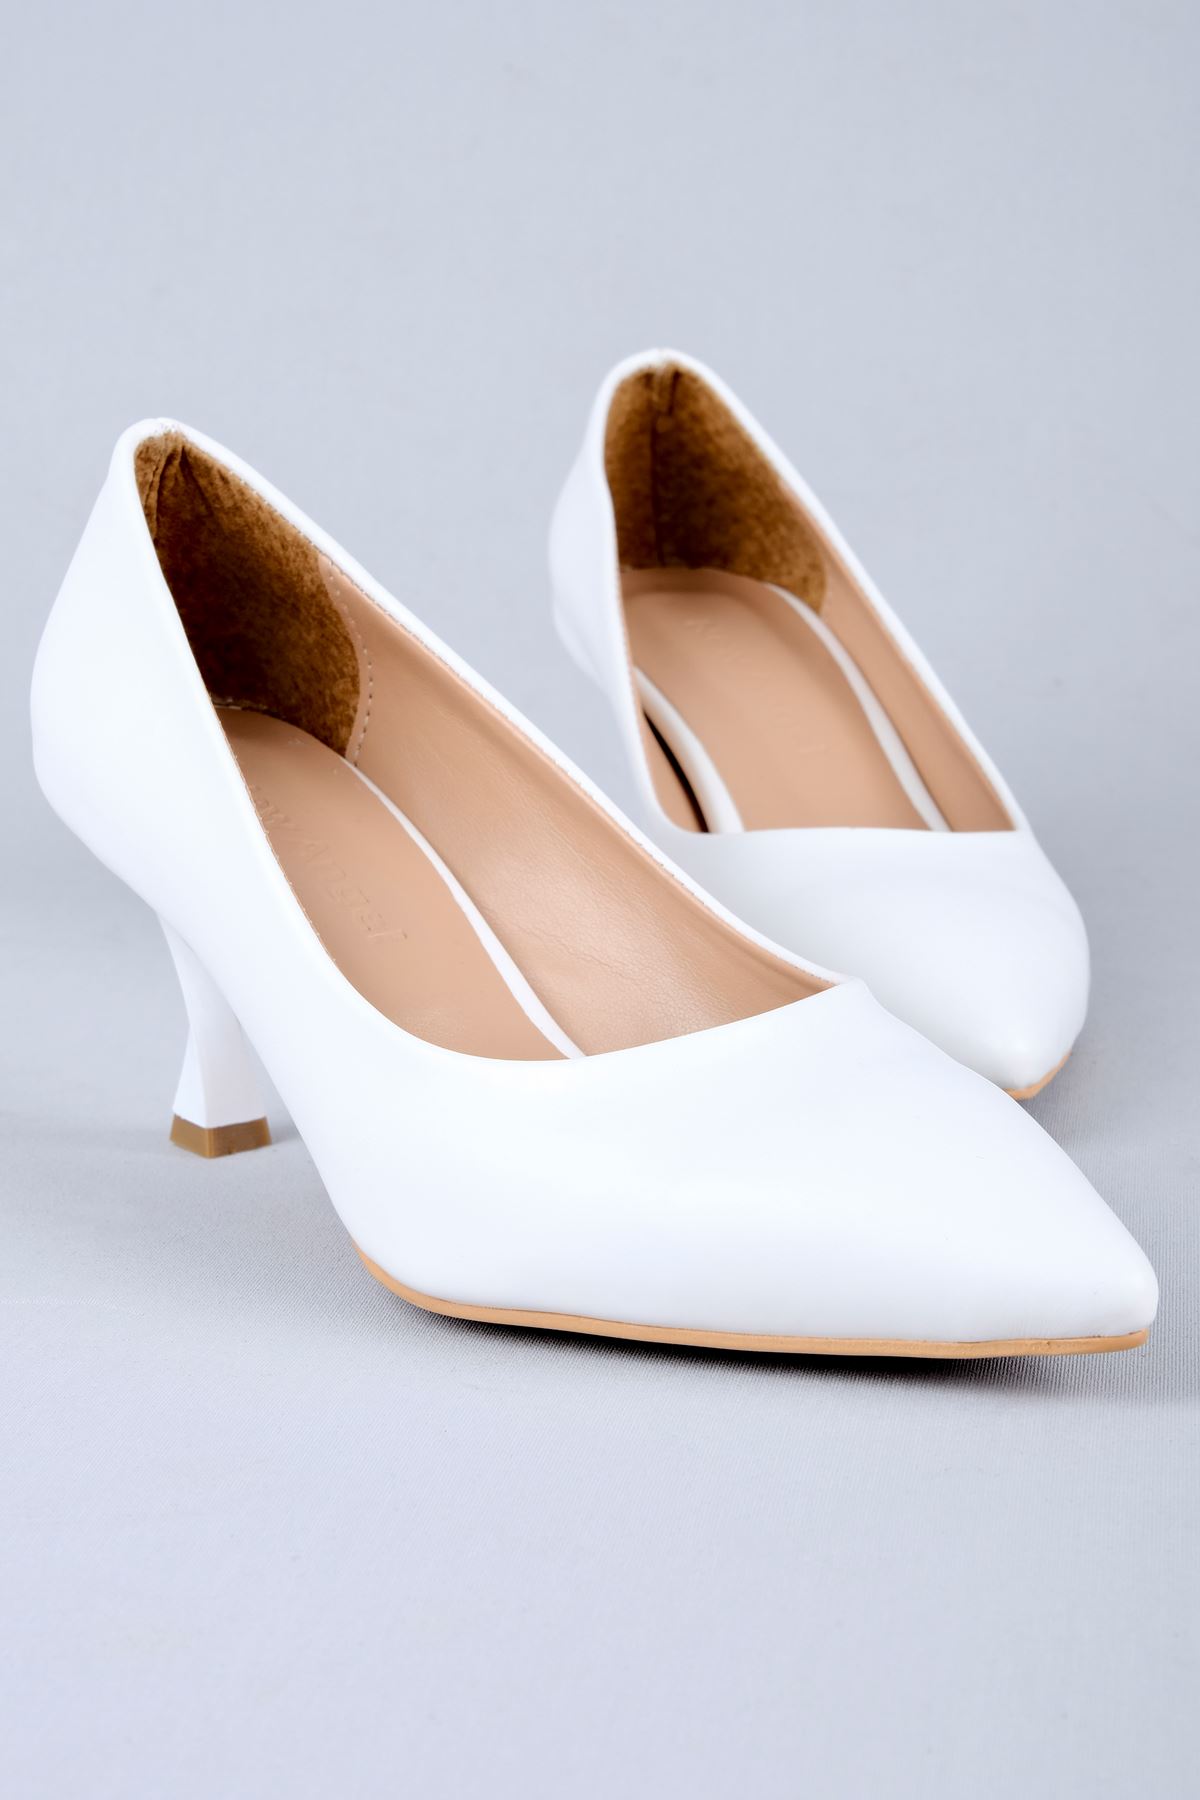 Norma Kadın Topuklu Ayakkabı-beyaz